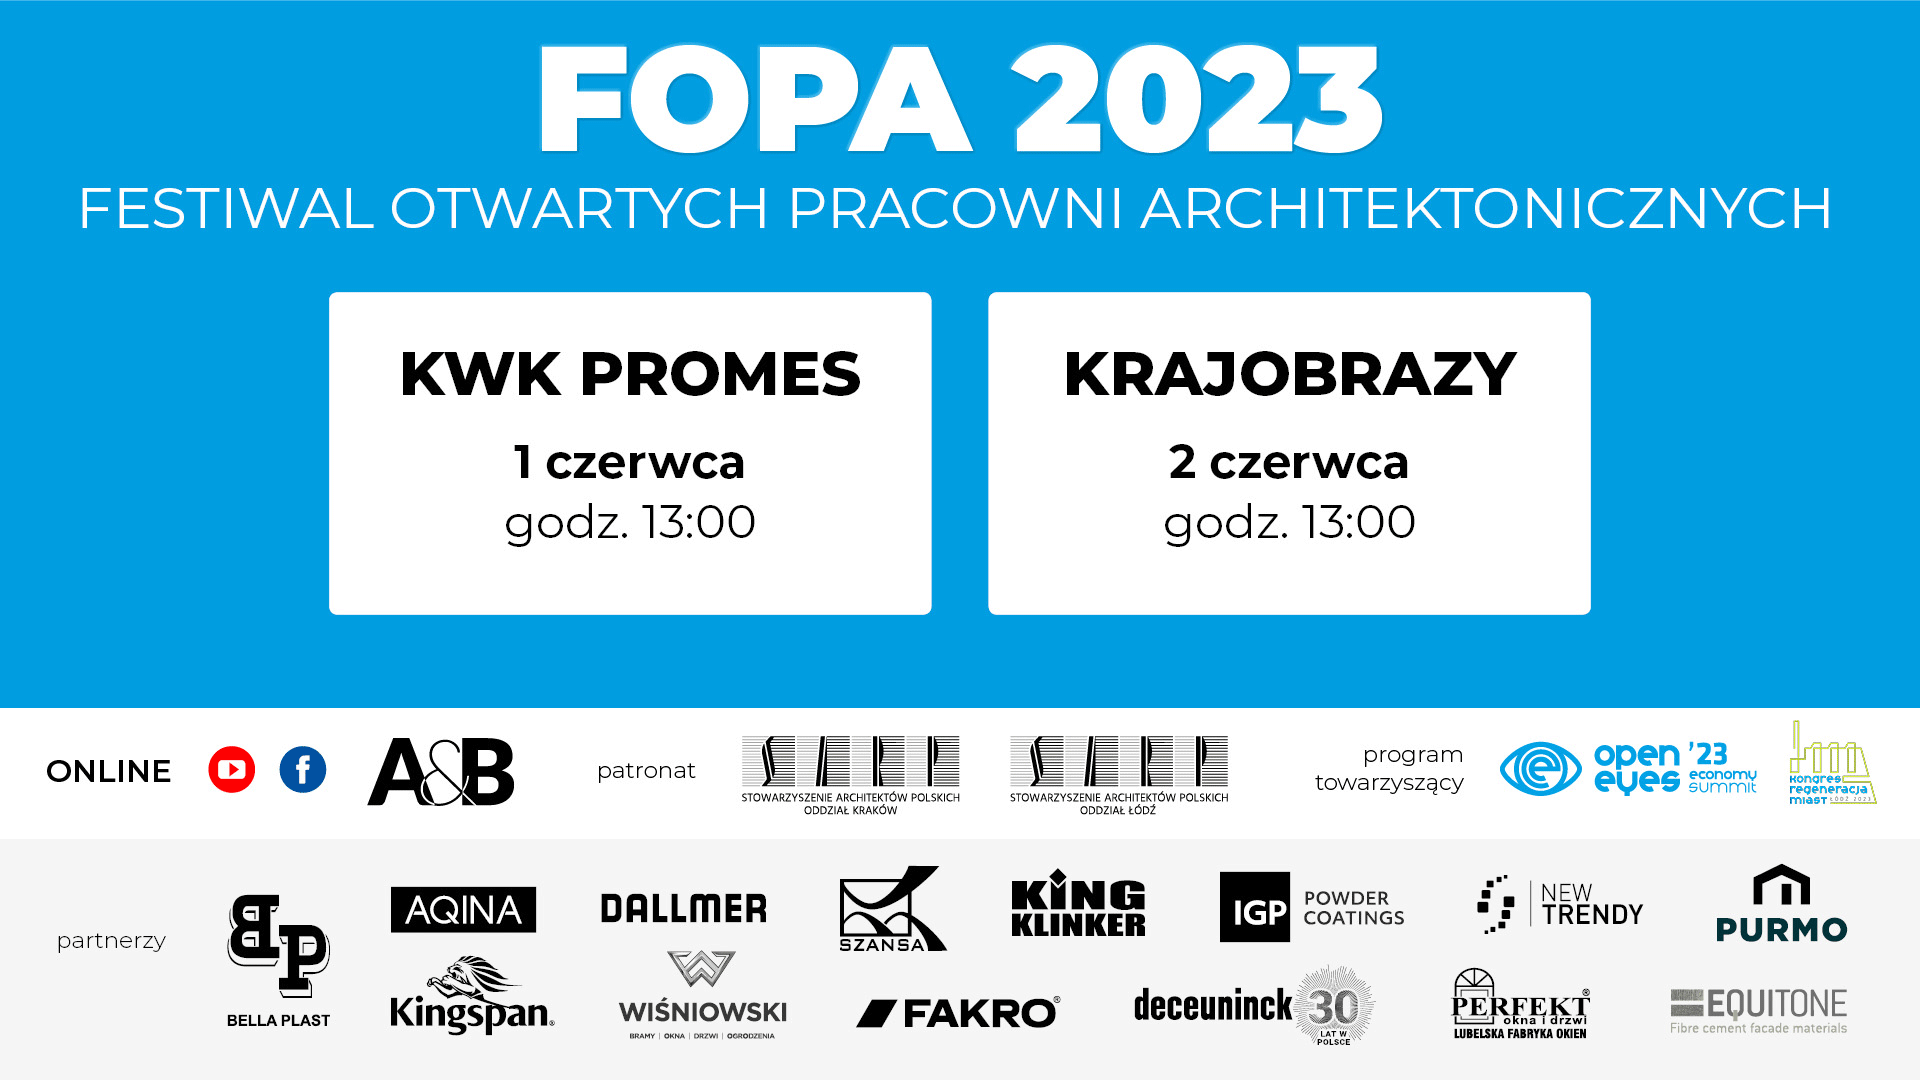 Festiwal Otwartych Pracowni Architektonicznych FOPA 2023 